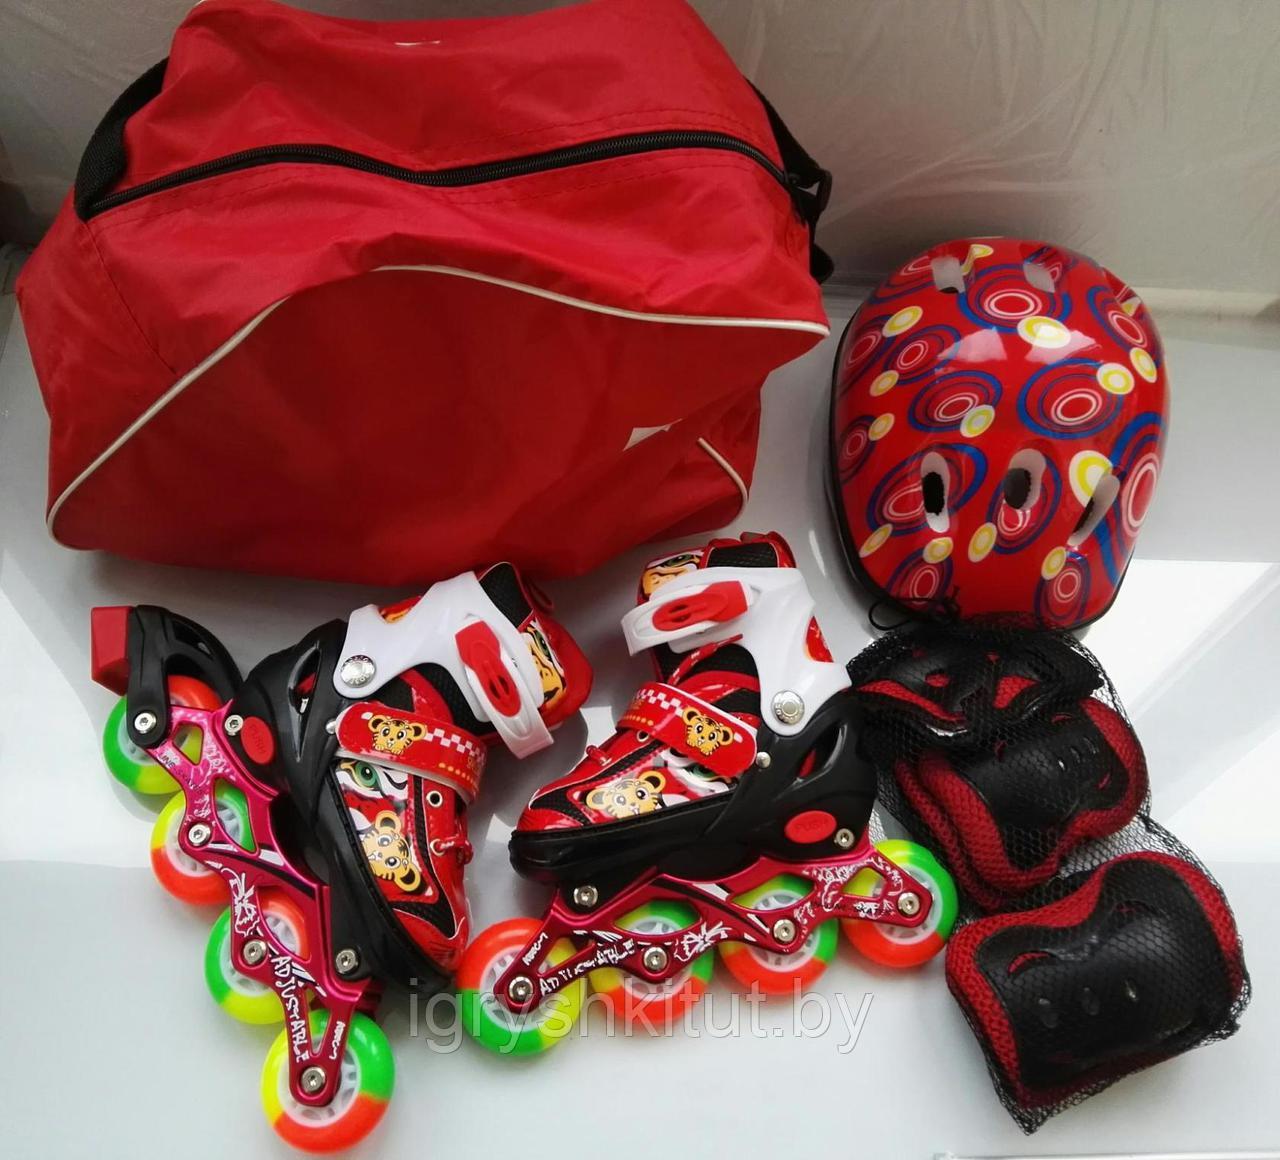 Светящиеся роликовые коньки размер L (39-43) +защита+шлем+сумка  цвет розовый,синий,красный.